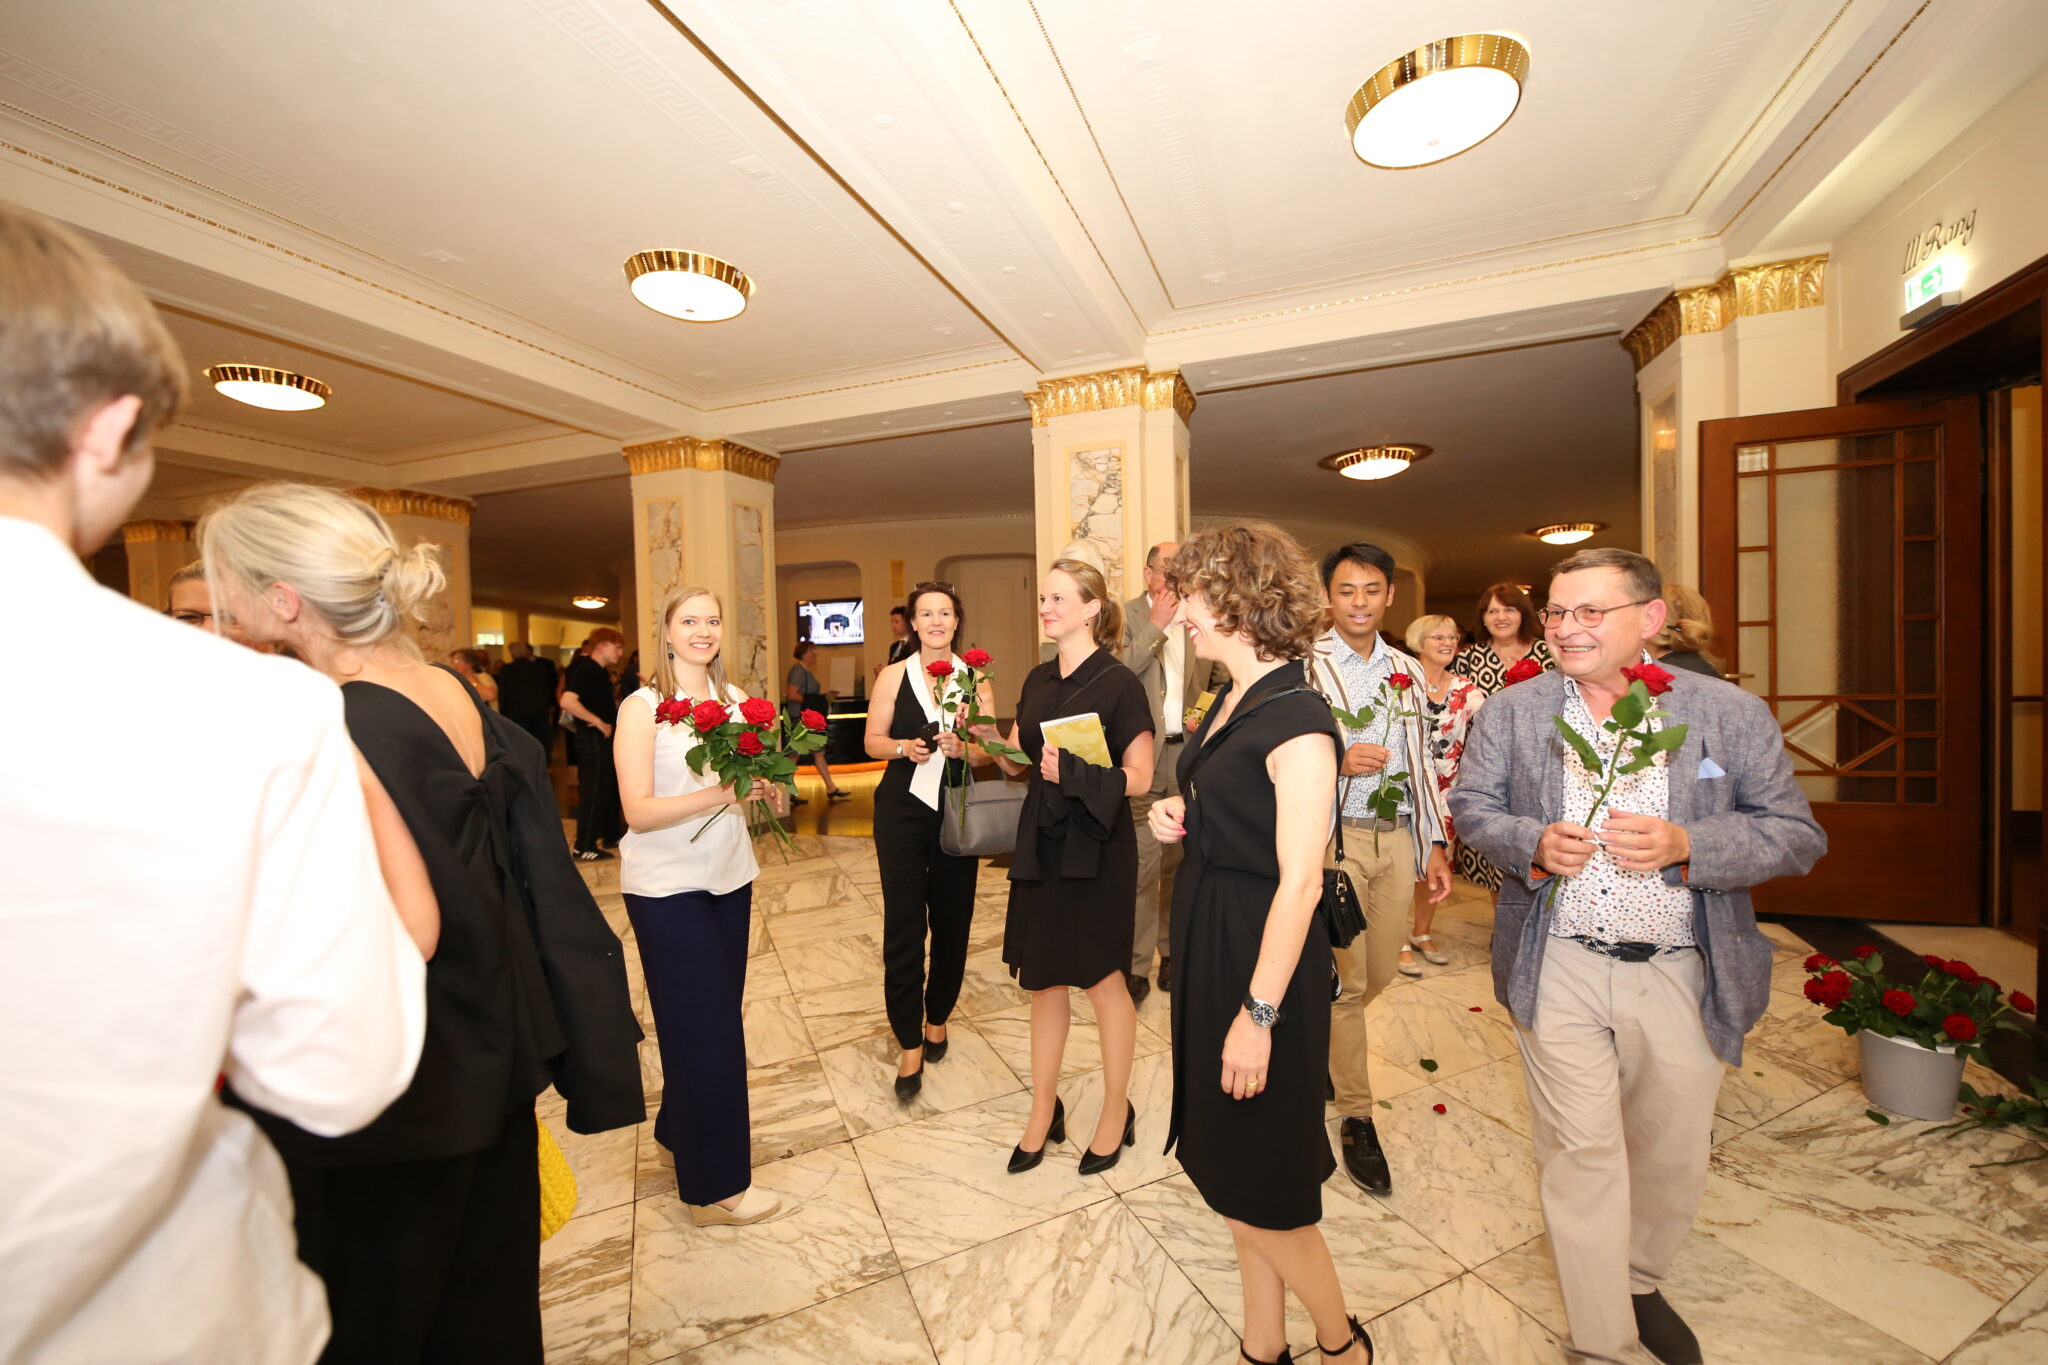 concerti beschenkte das Publikum des Jahres 2022 mit Rosen im glanzvollen Foyer des Staatstheaters